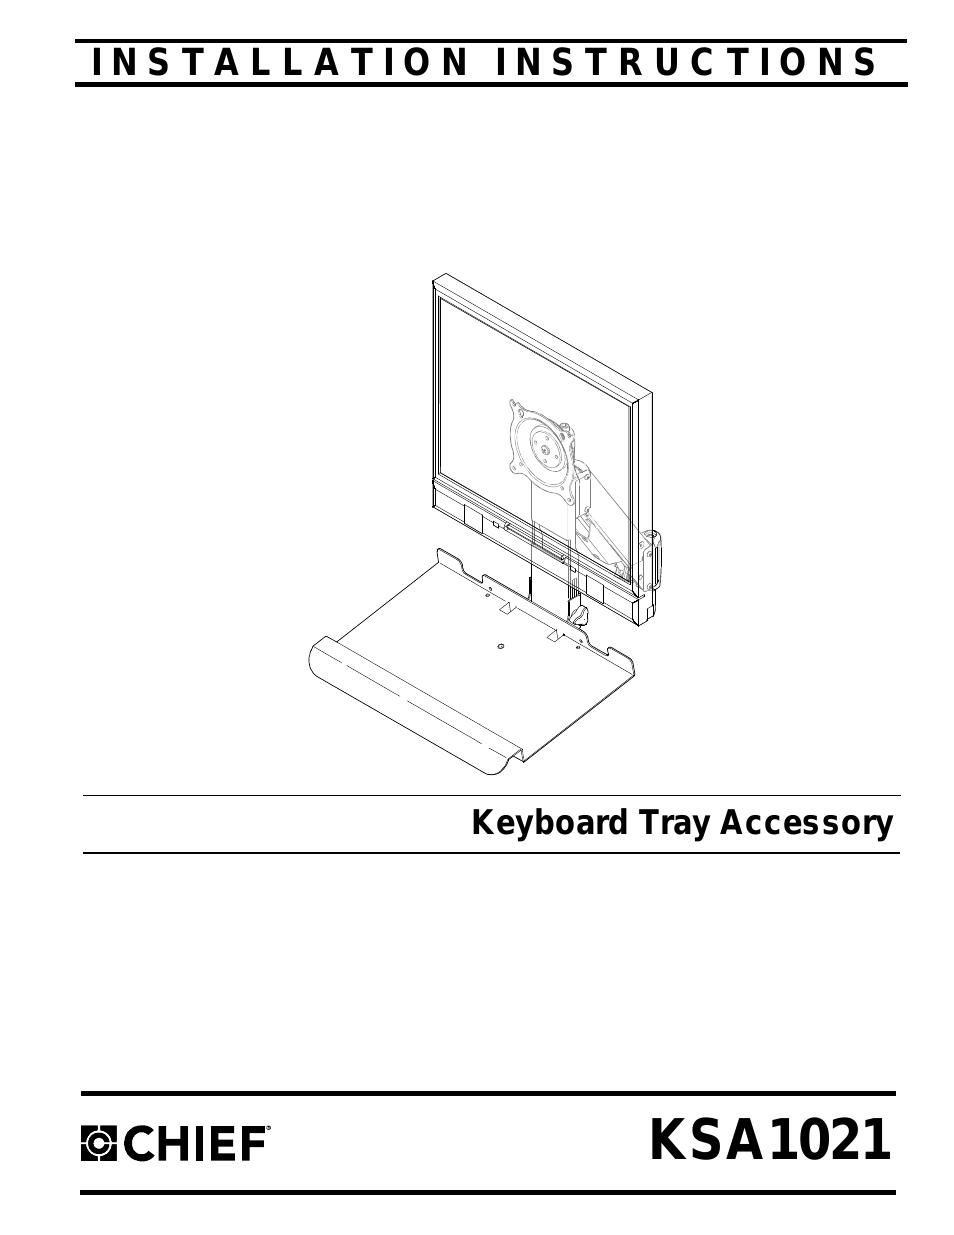 Keyboard Tray Accessory KSA1021